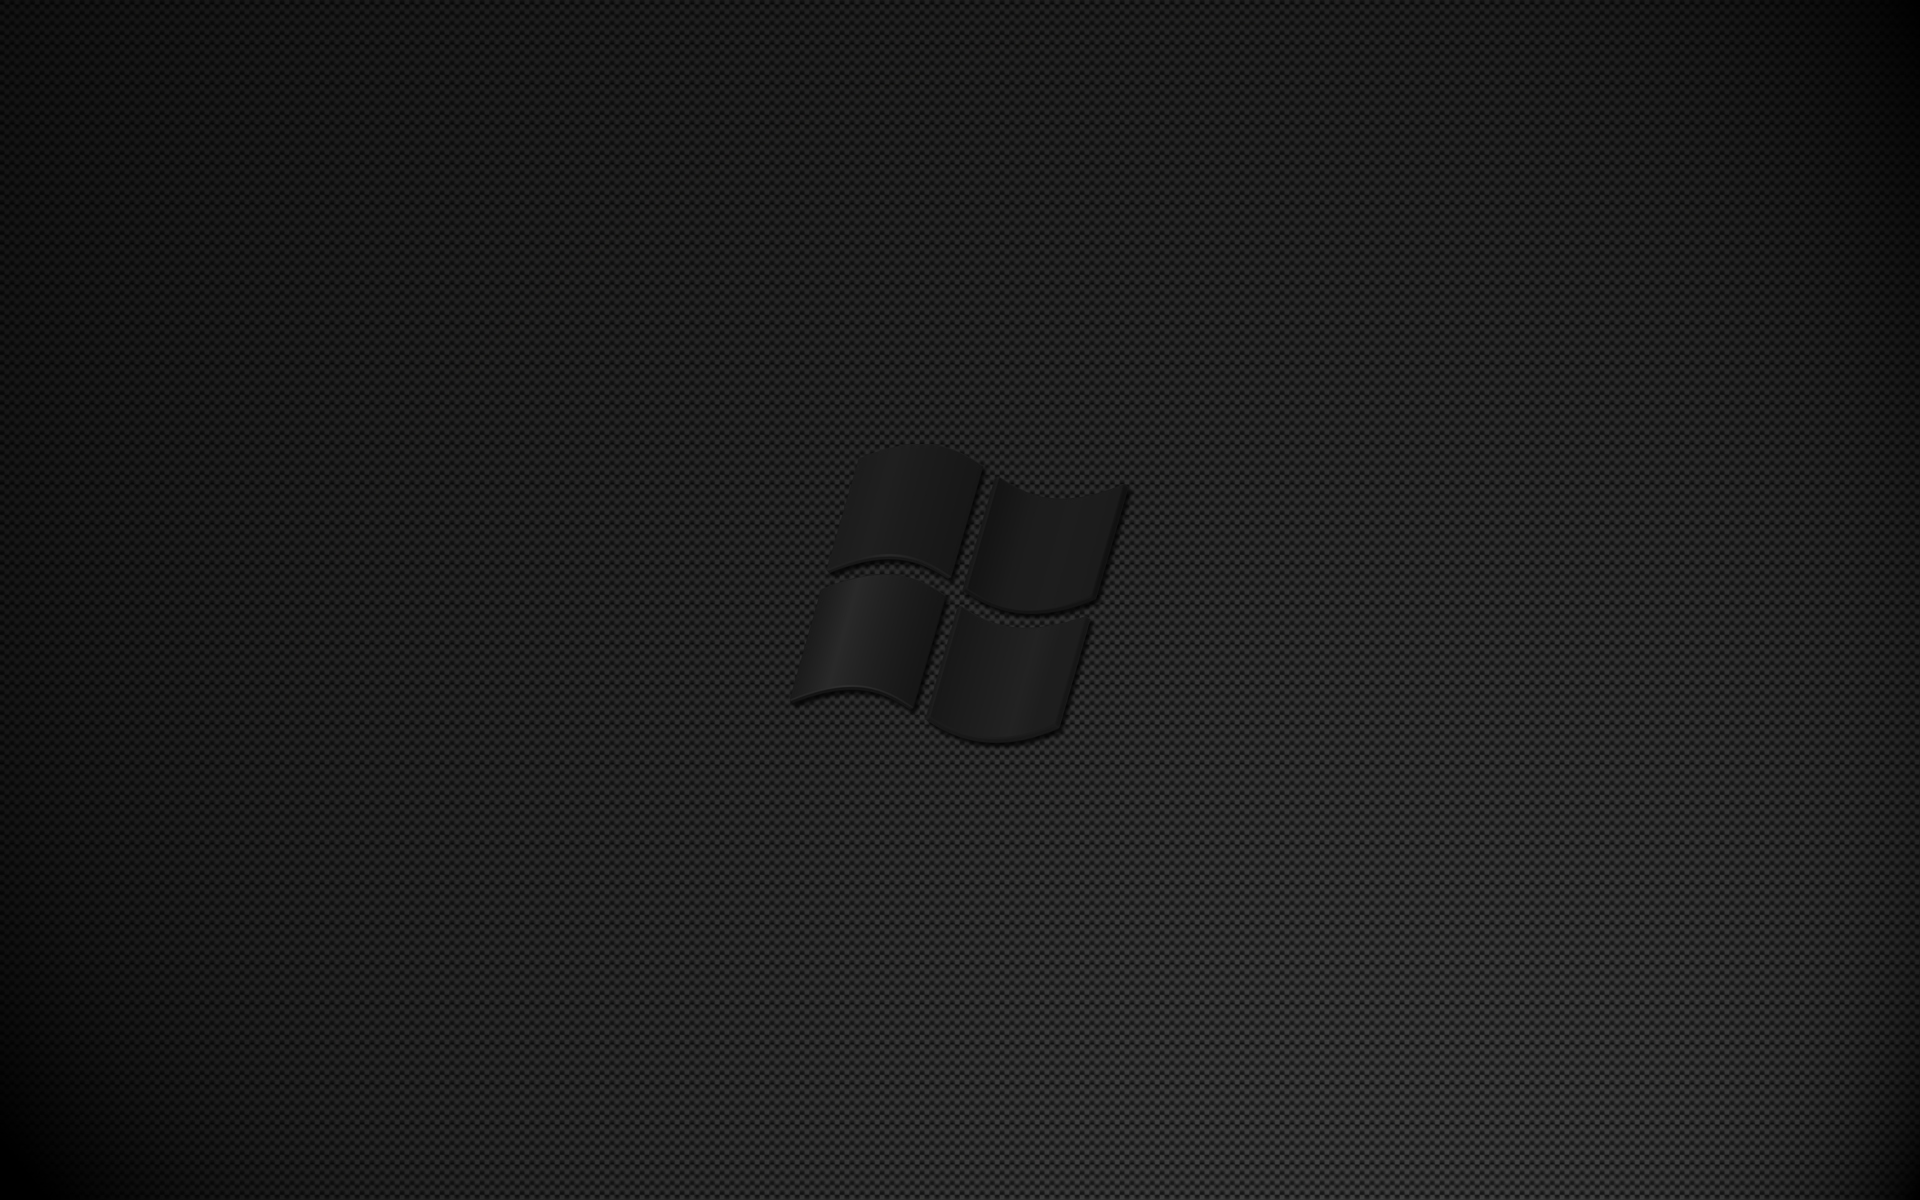 Nếu bạn yêu thích sự đơn giản nhưng đầy mạnh mẽ, hình nền Windows đen chắc chắn sẽ làm mãn nhãn bạn với sự thanh lịch và sang trọng. Hãy làm mới màn hình máy tính của bạn với bộ hình này ngay thôi!